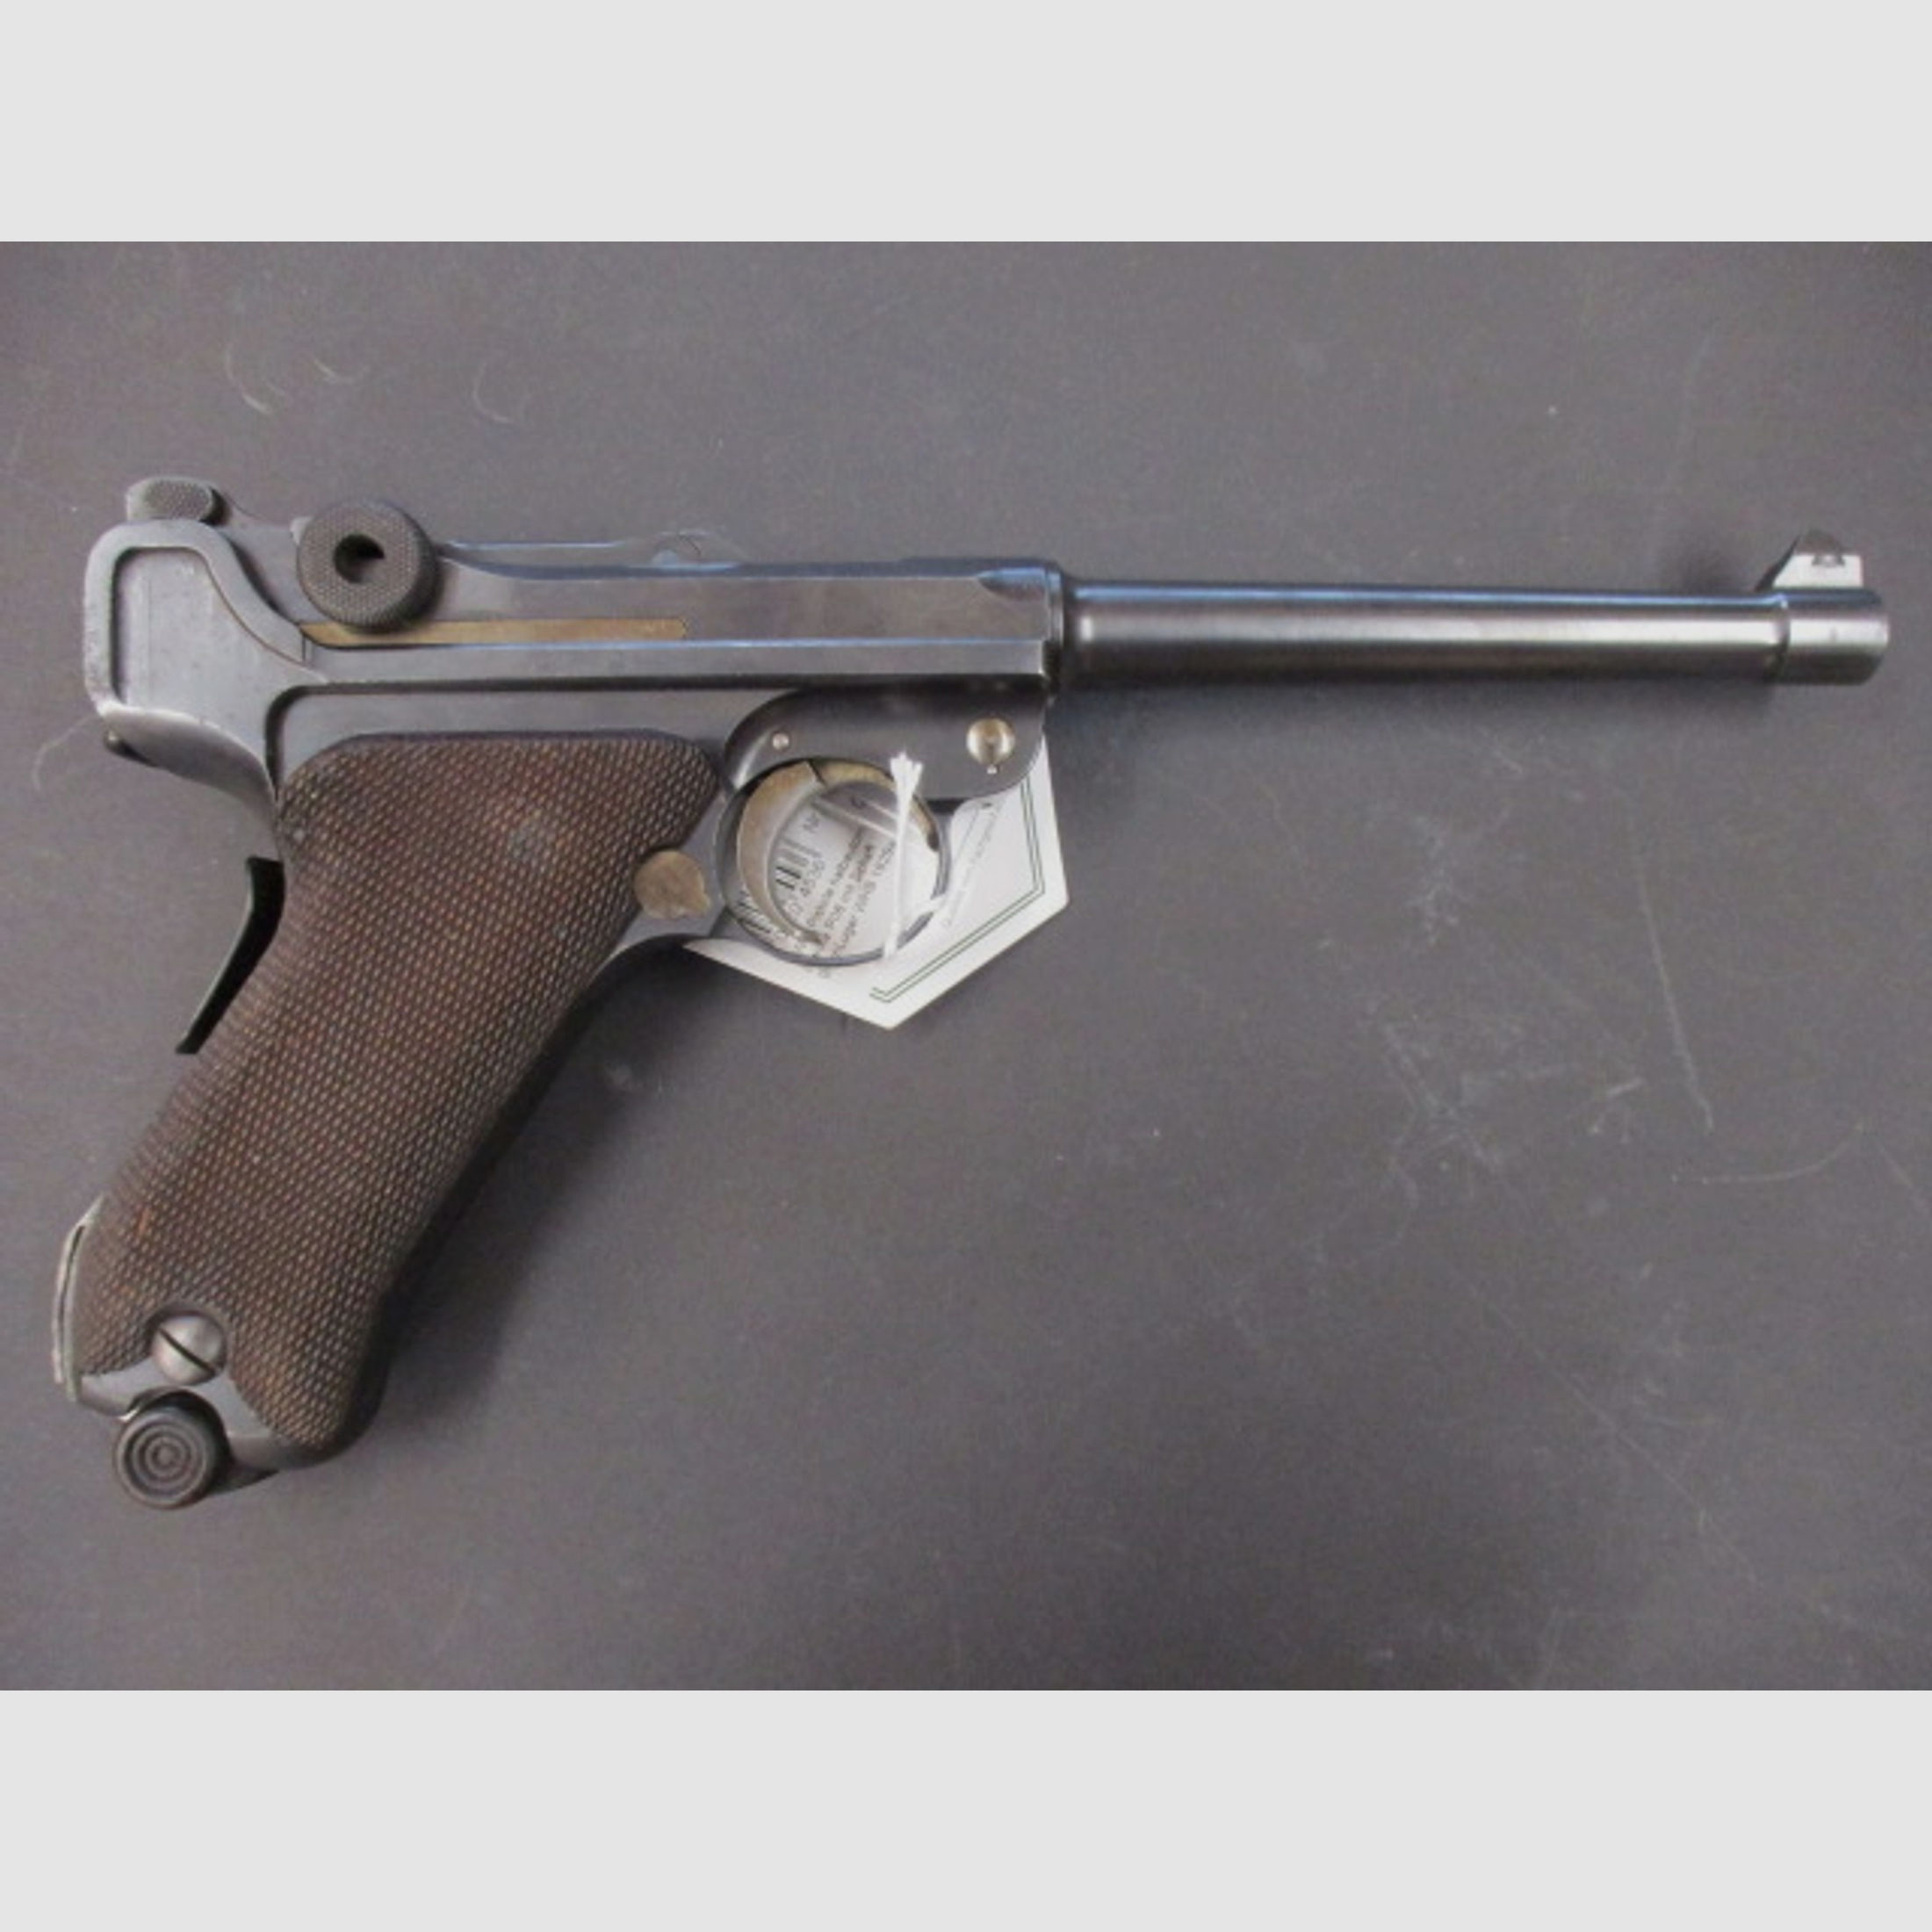 Marinepistole 04 ( gen. Marine 08 ) , kal. 9mm Luger